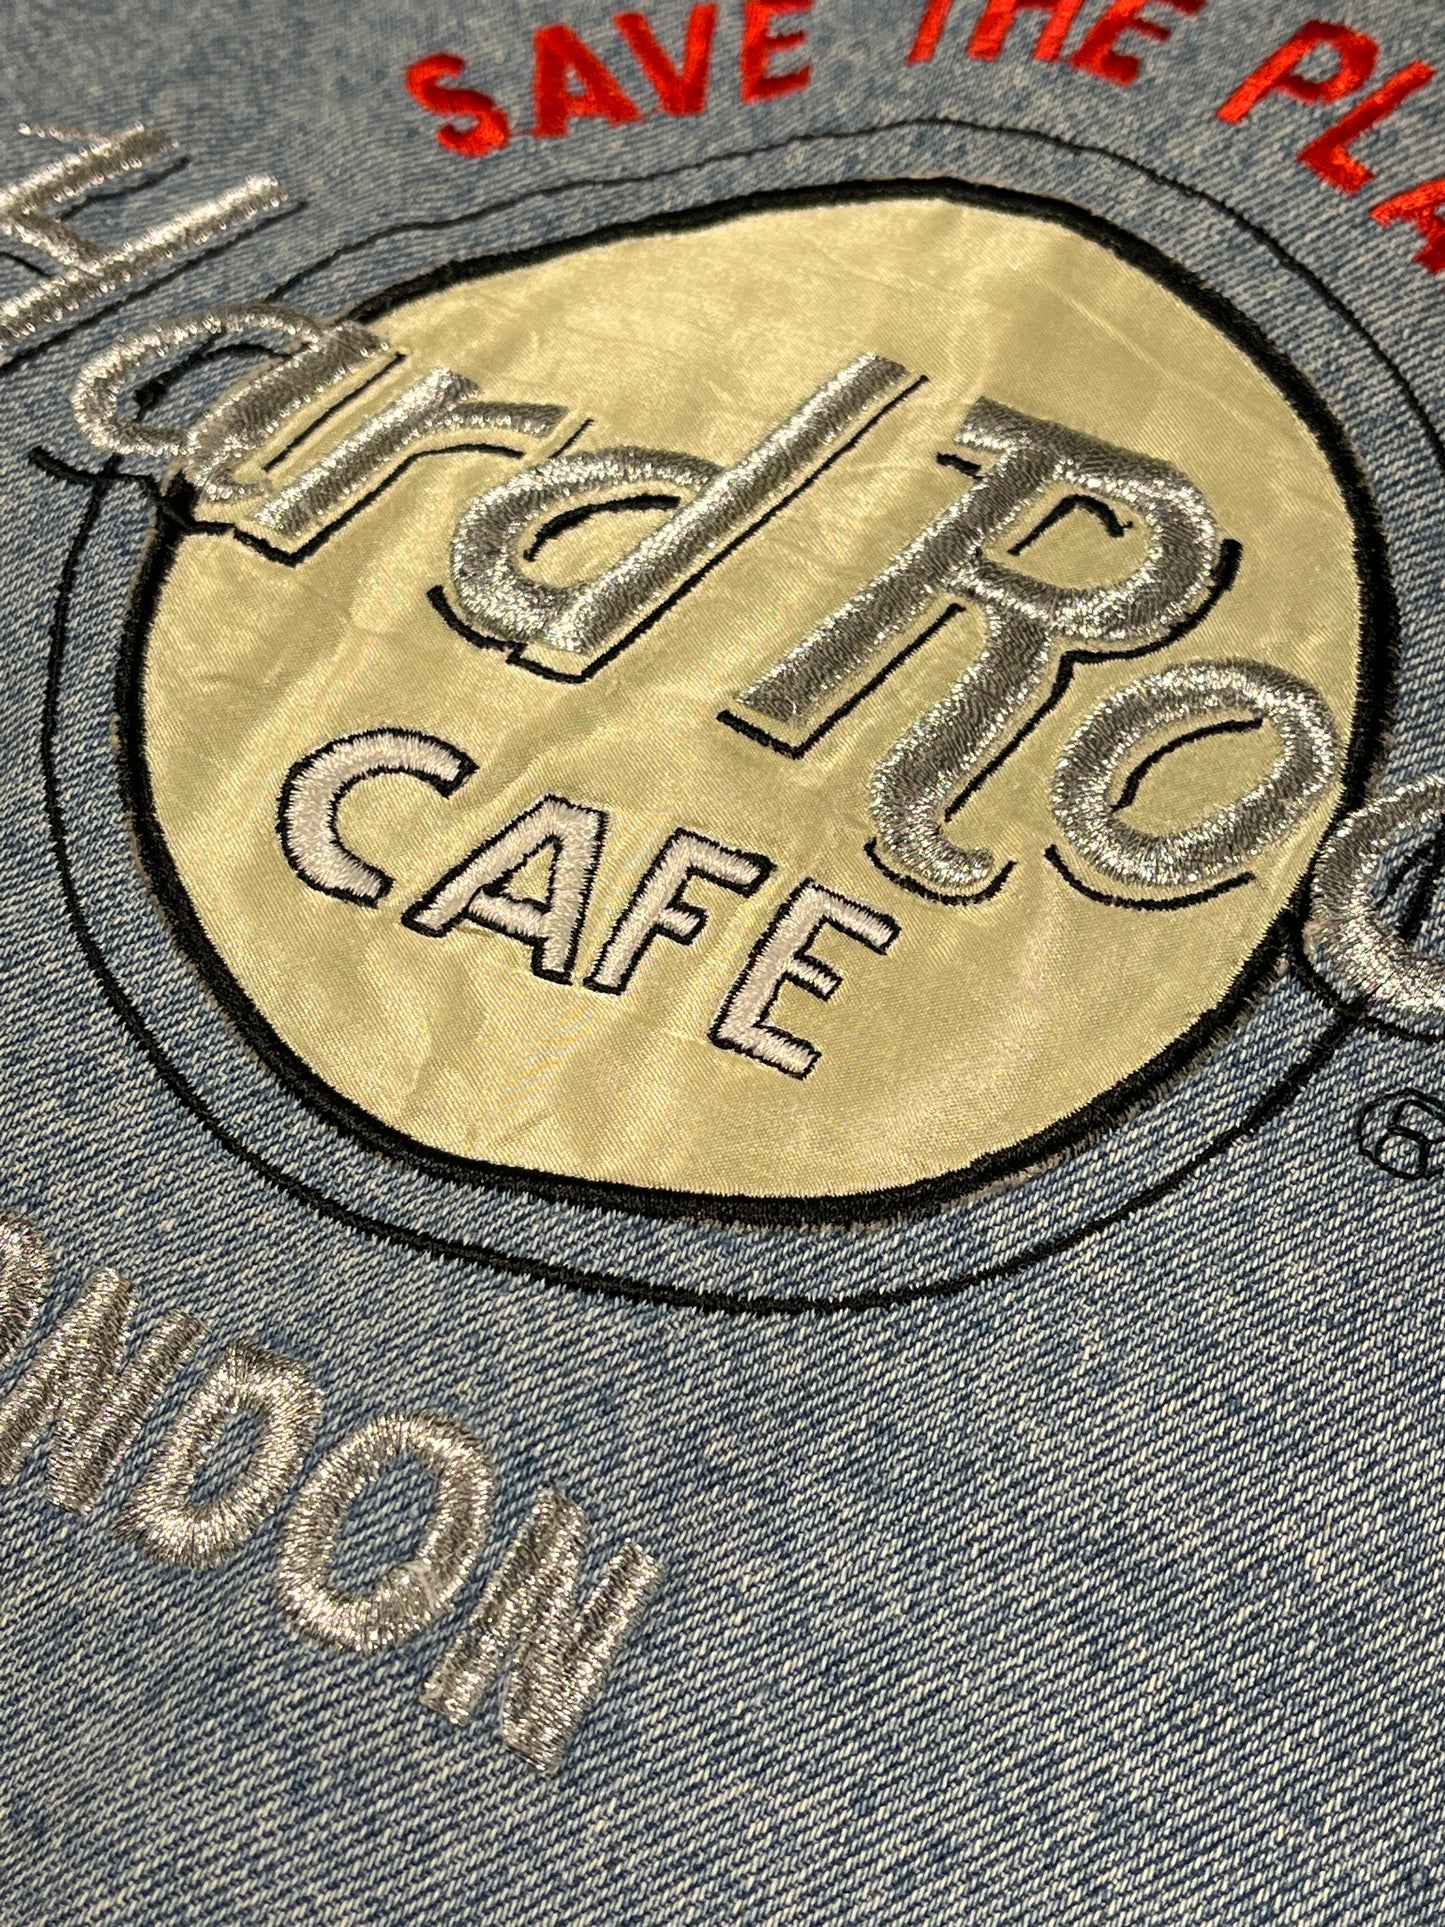 Vintage Hard Rock Cafe Denim Jacket EPIC